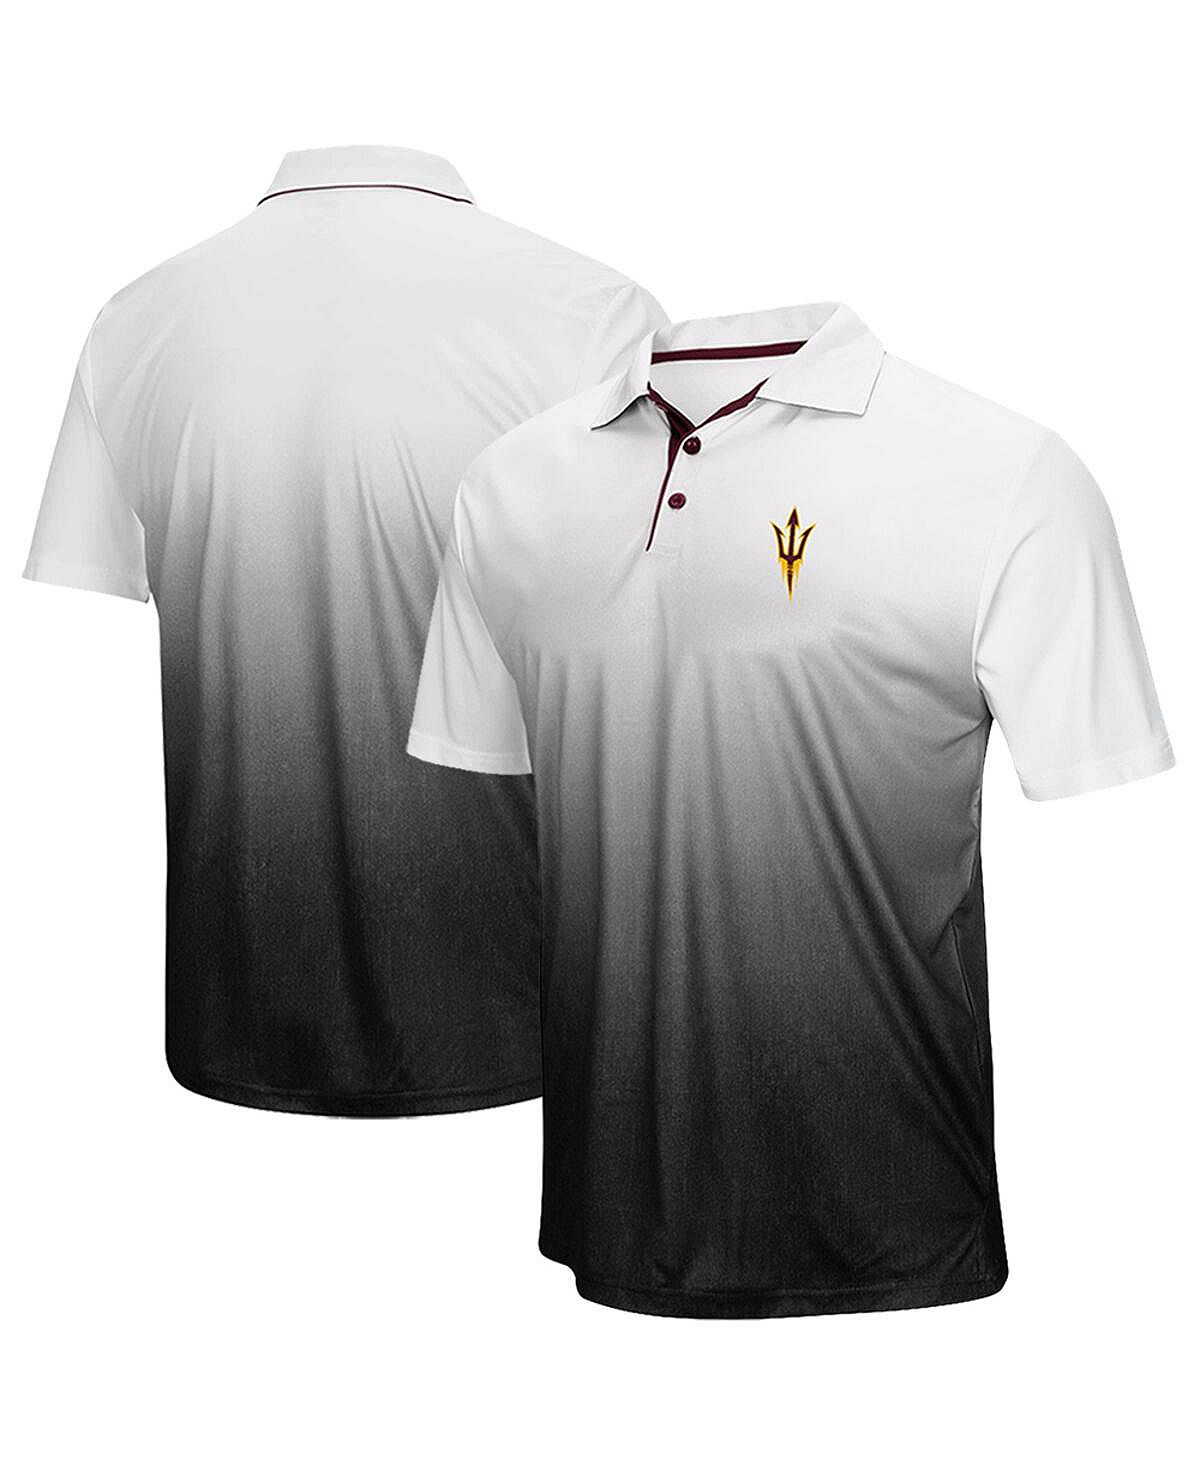 Мужская рубашка поло с логотипом arizona state sun devils magic team в меланжевом цвете серого цвета Colosseum, мульти